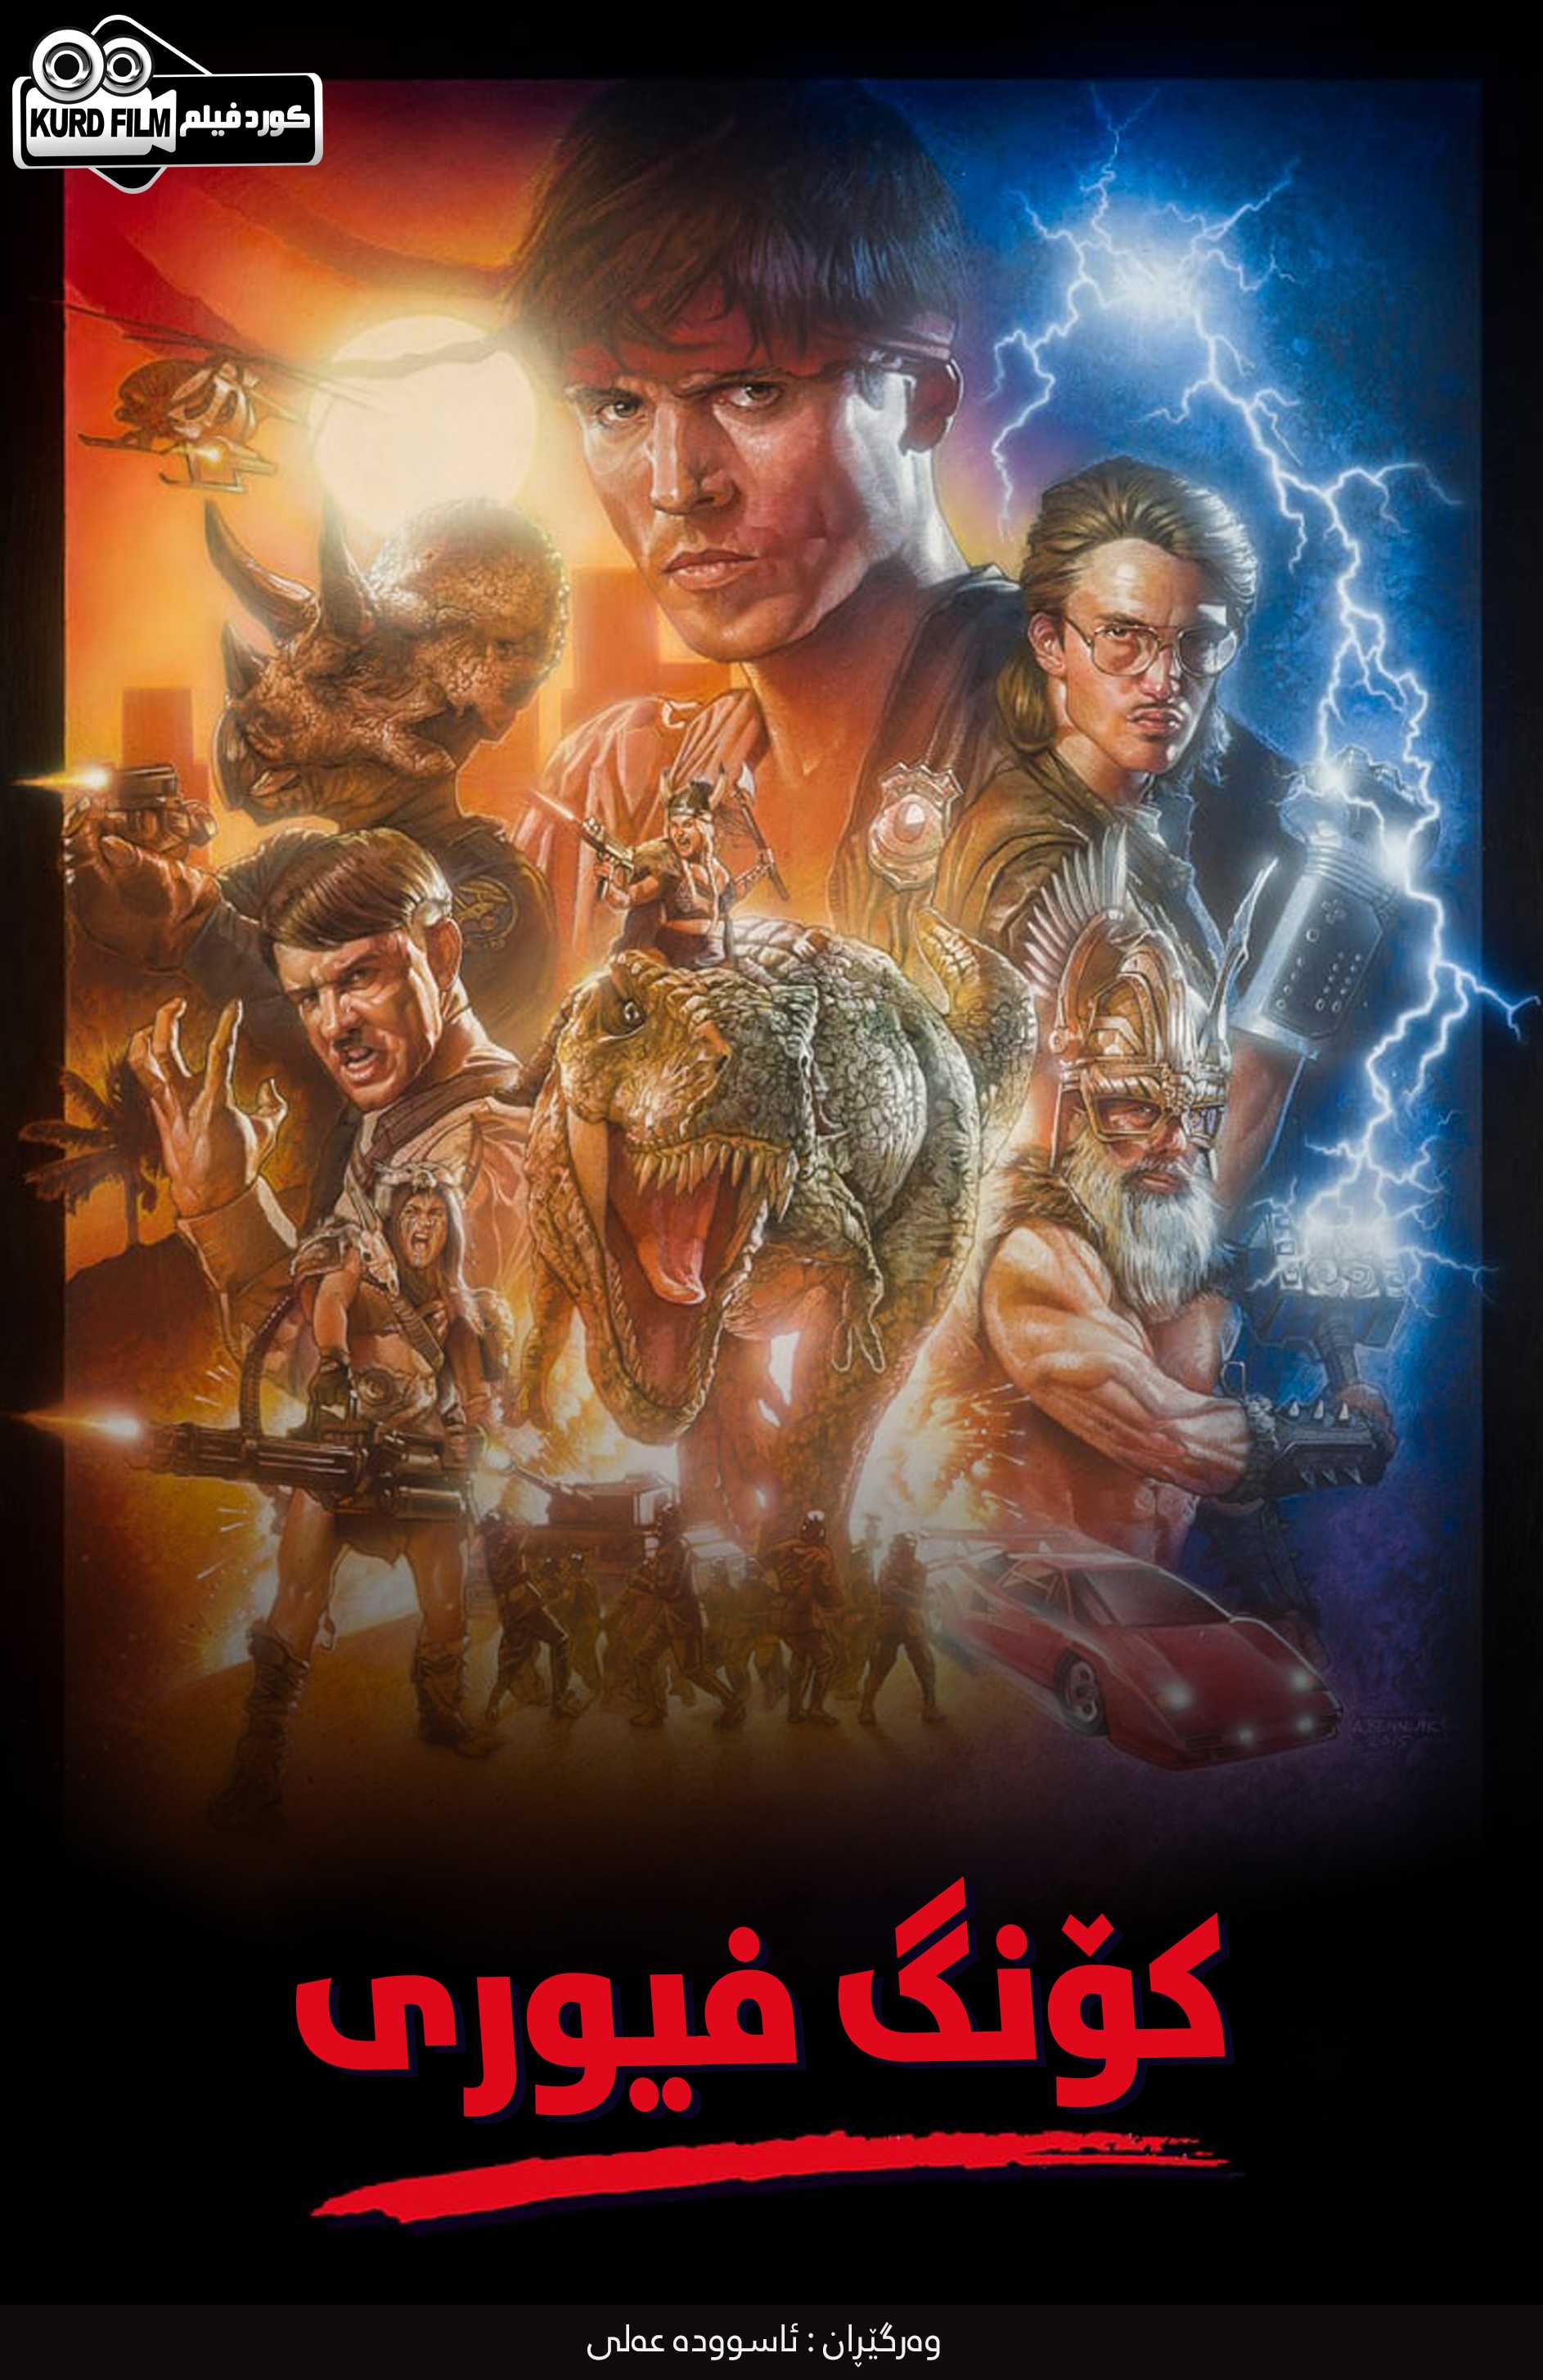 Kung Fury (2015)